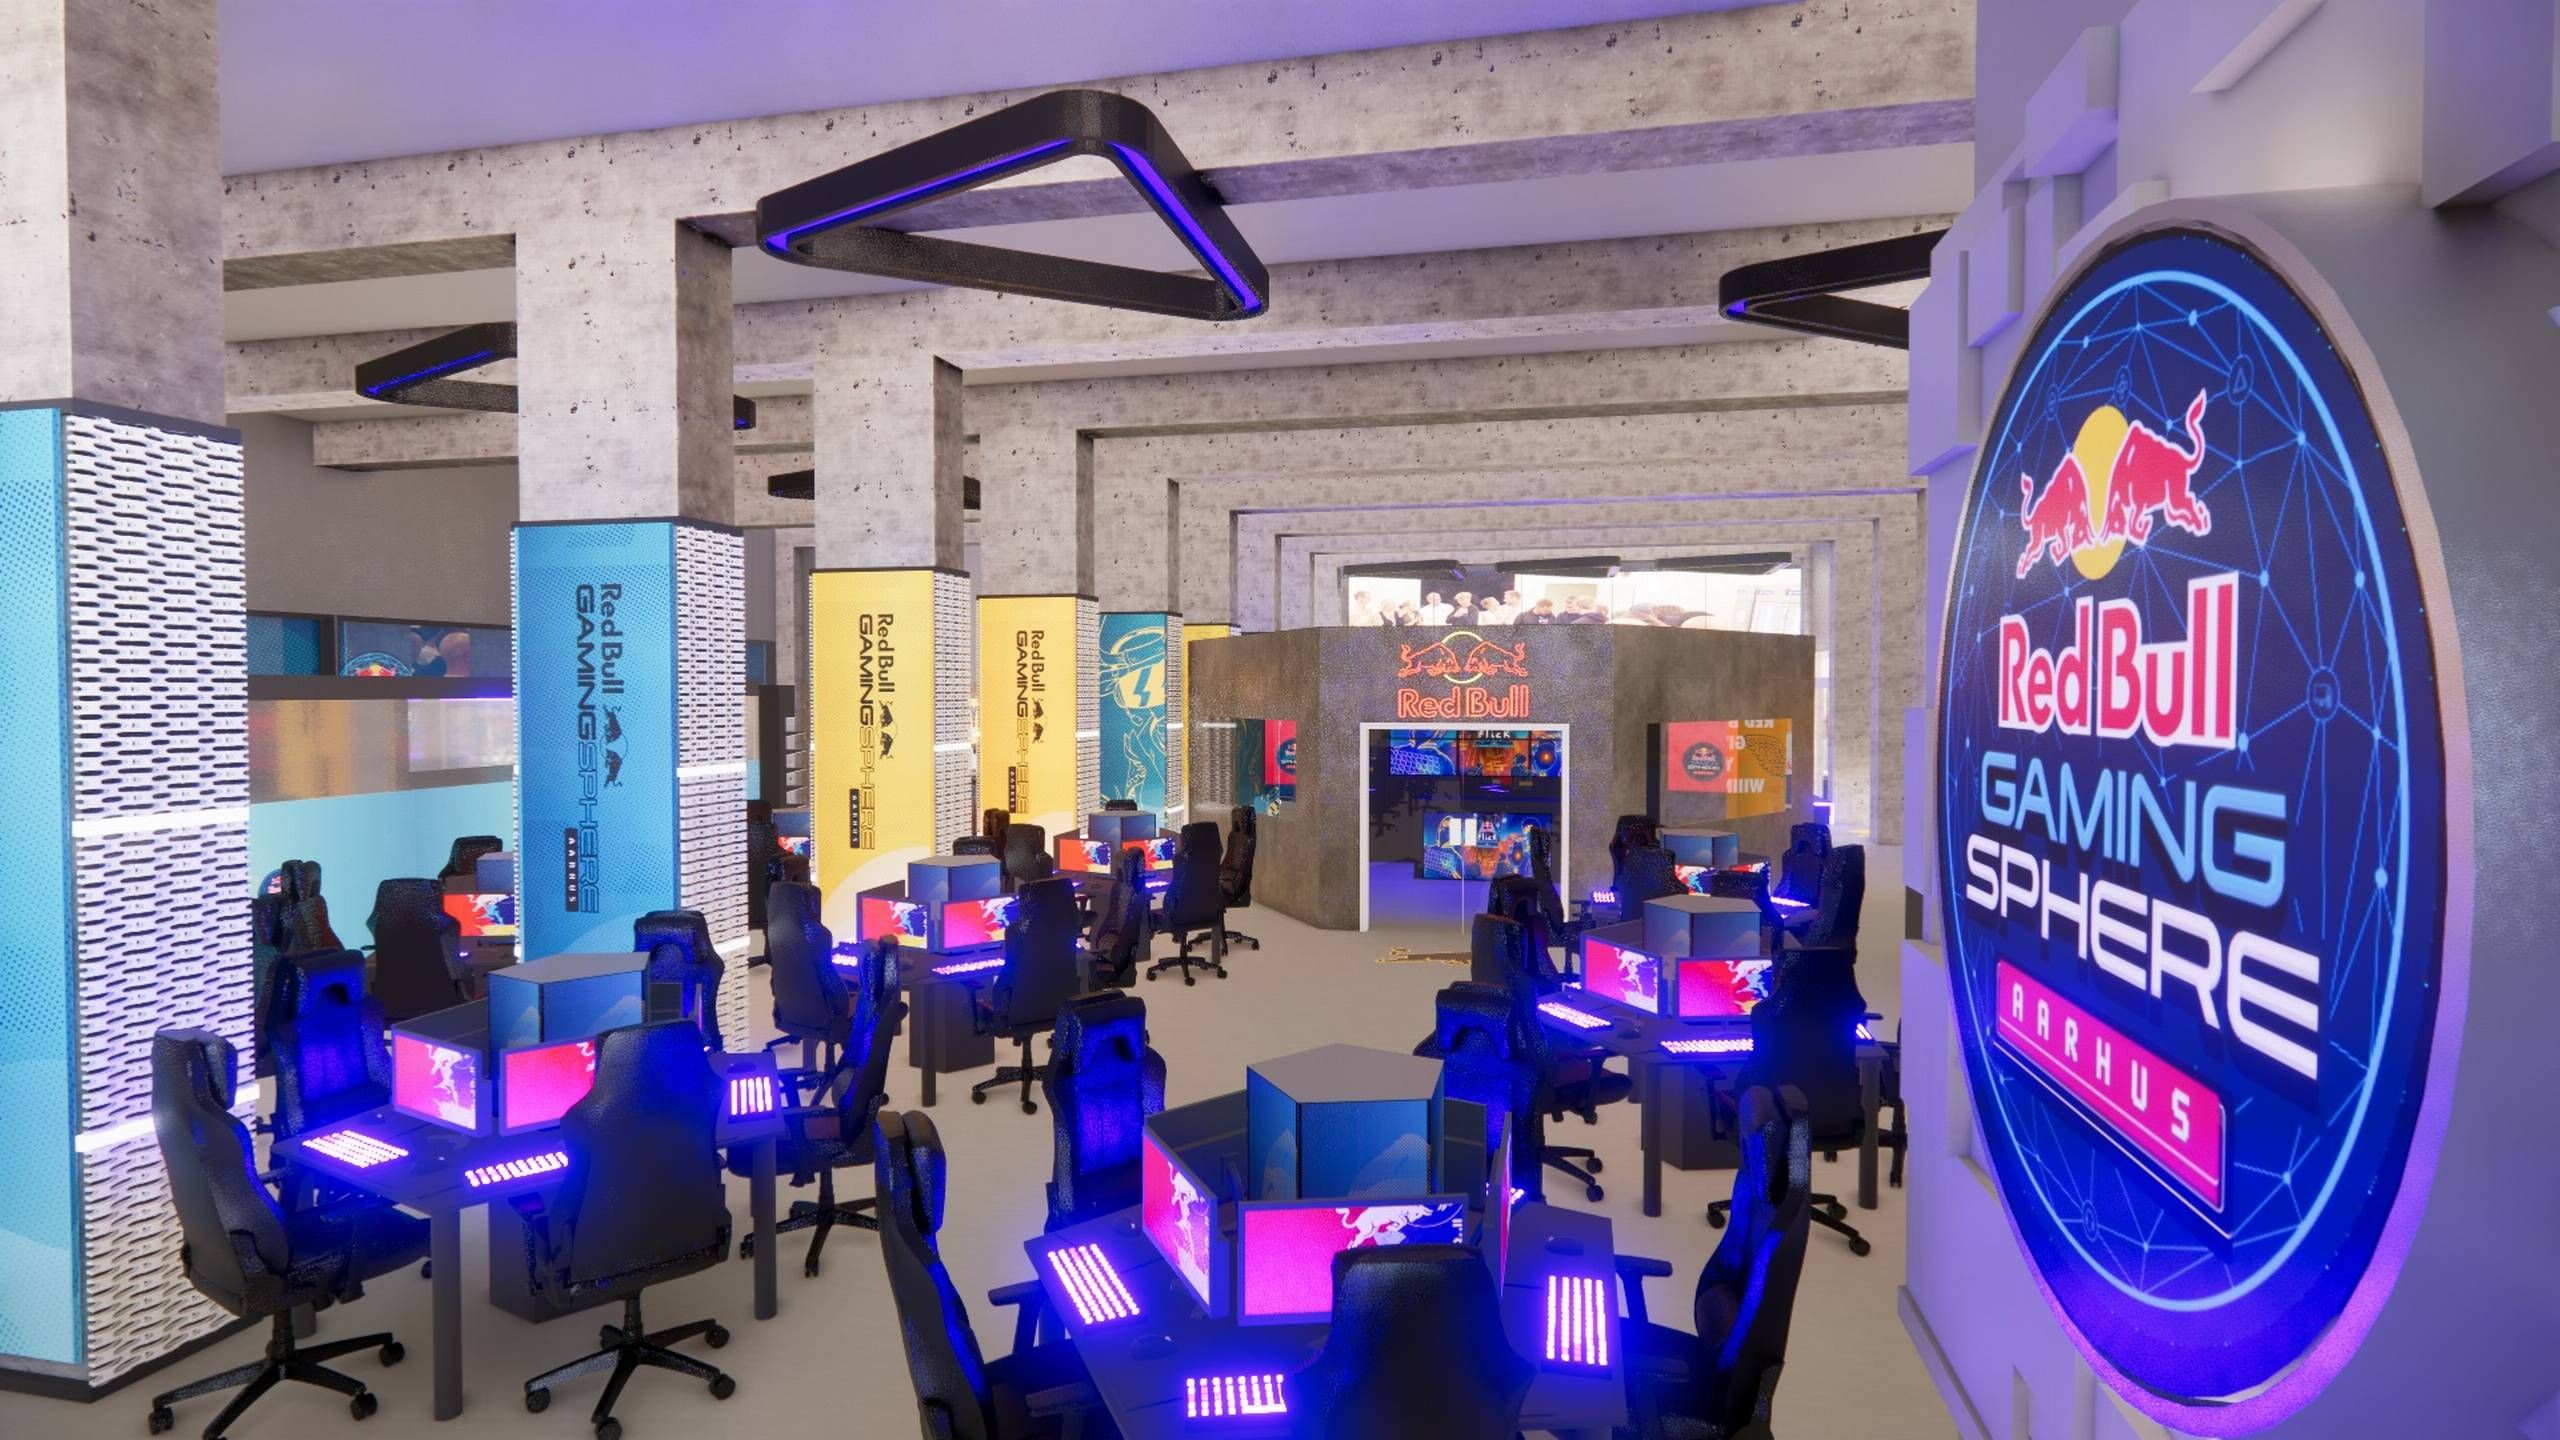 Red Bull åbner sit største gamingcenter Aarhus det Tokyo og London